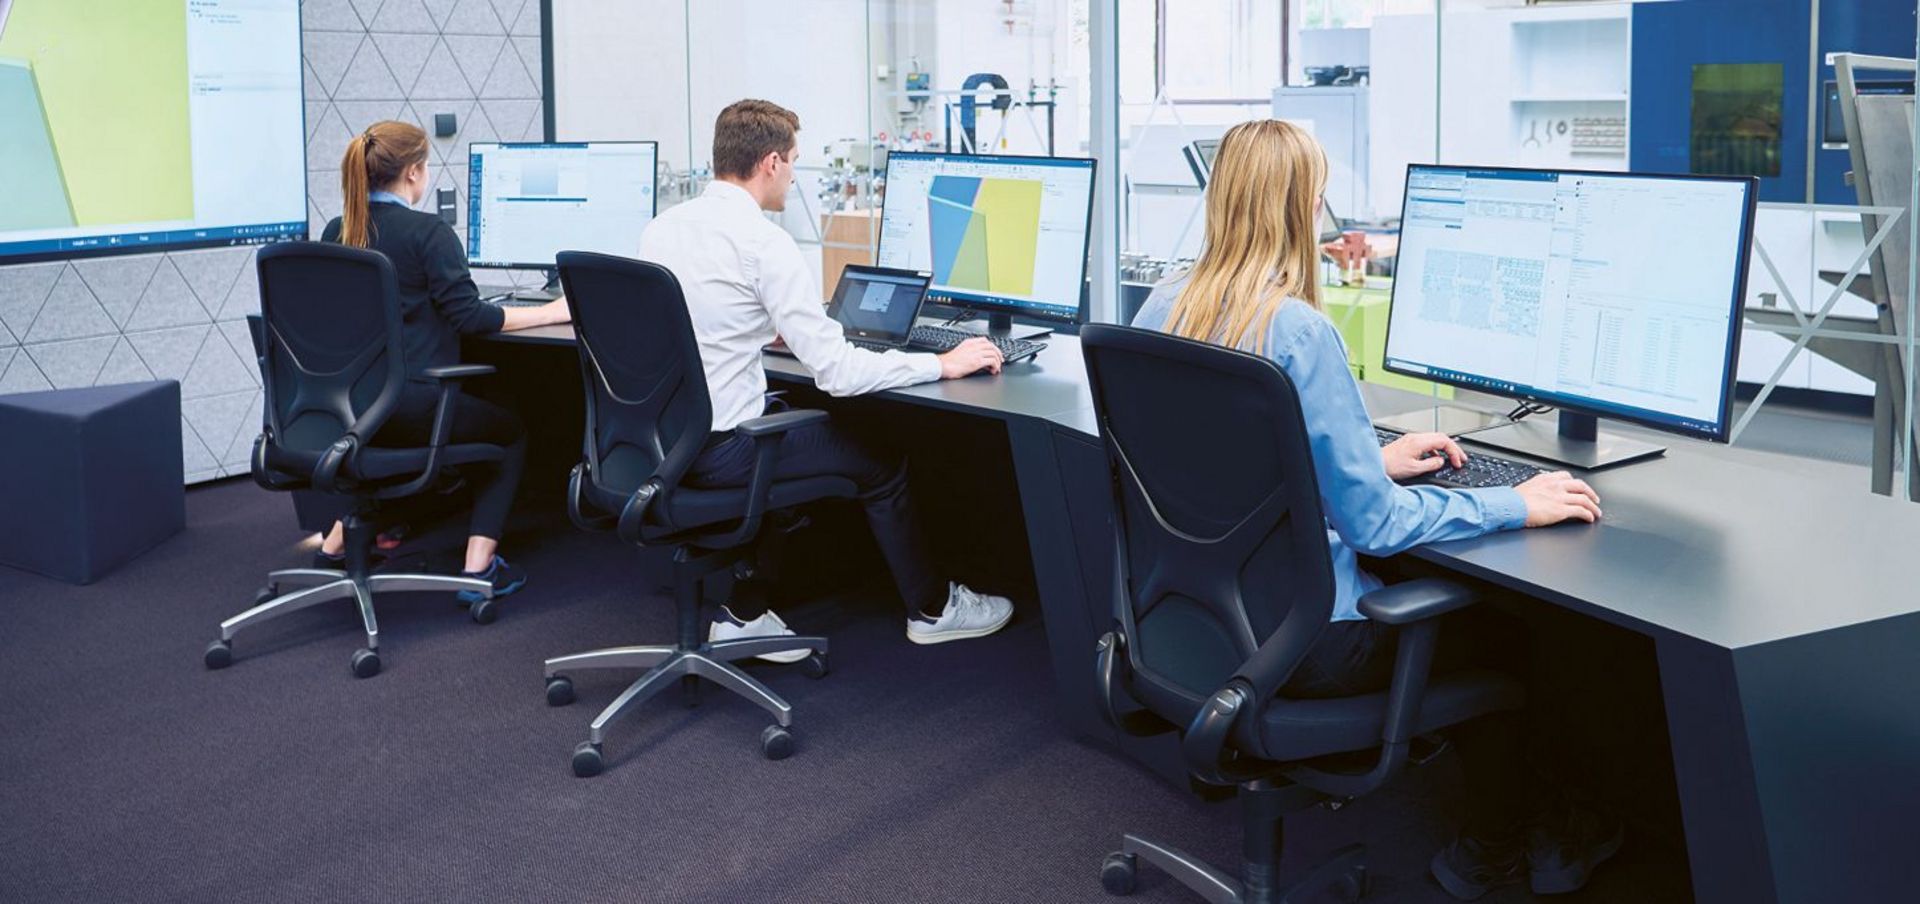 Drei Menschen sitzen vor Computern am Schreibtisch